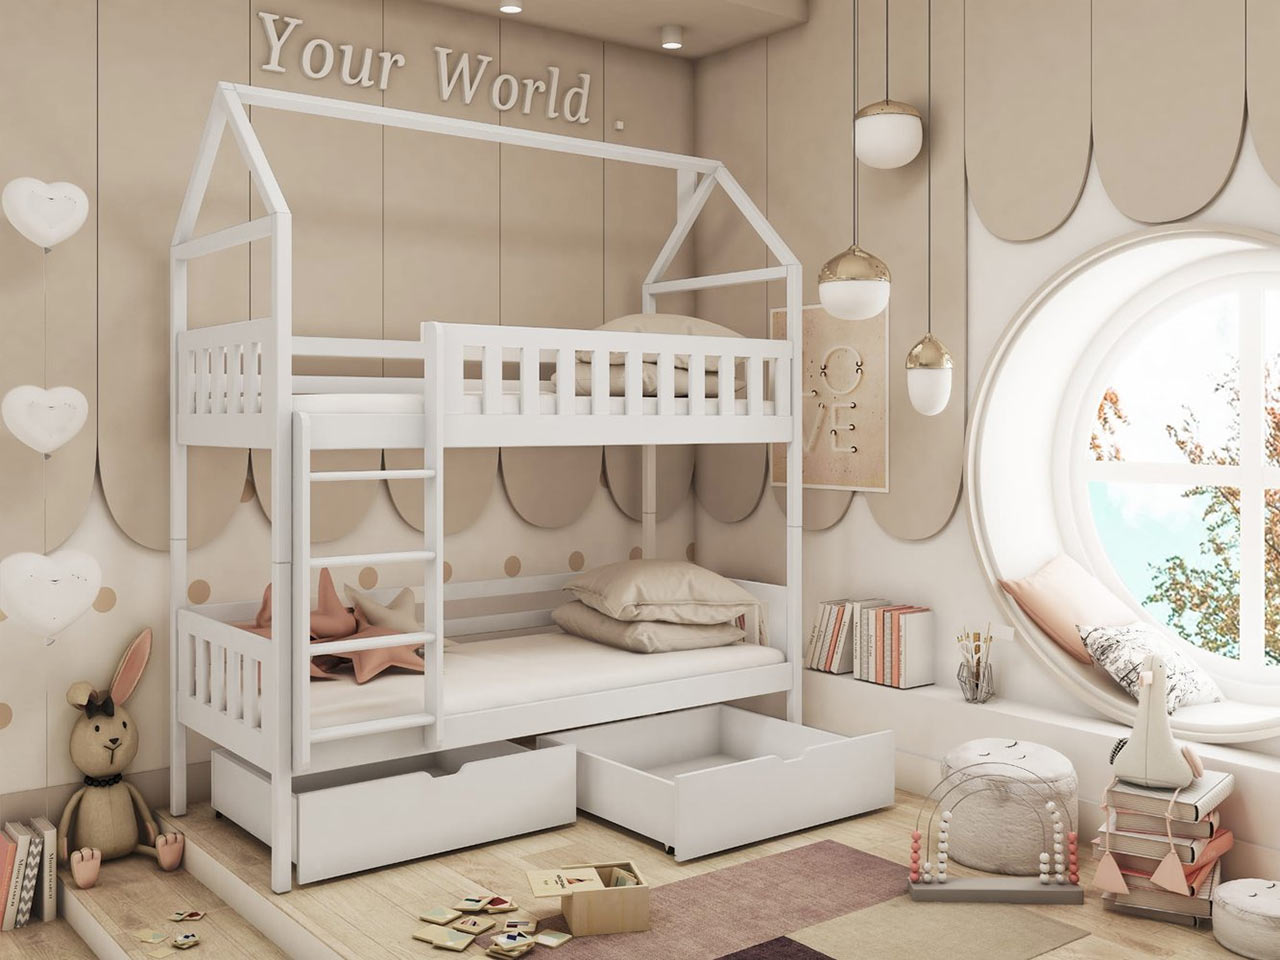 Emeletes ágy gyerekeknek – ház alakú 2 gyerkőc számára tárolóhellyel